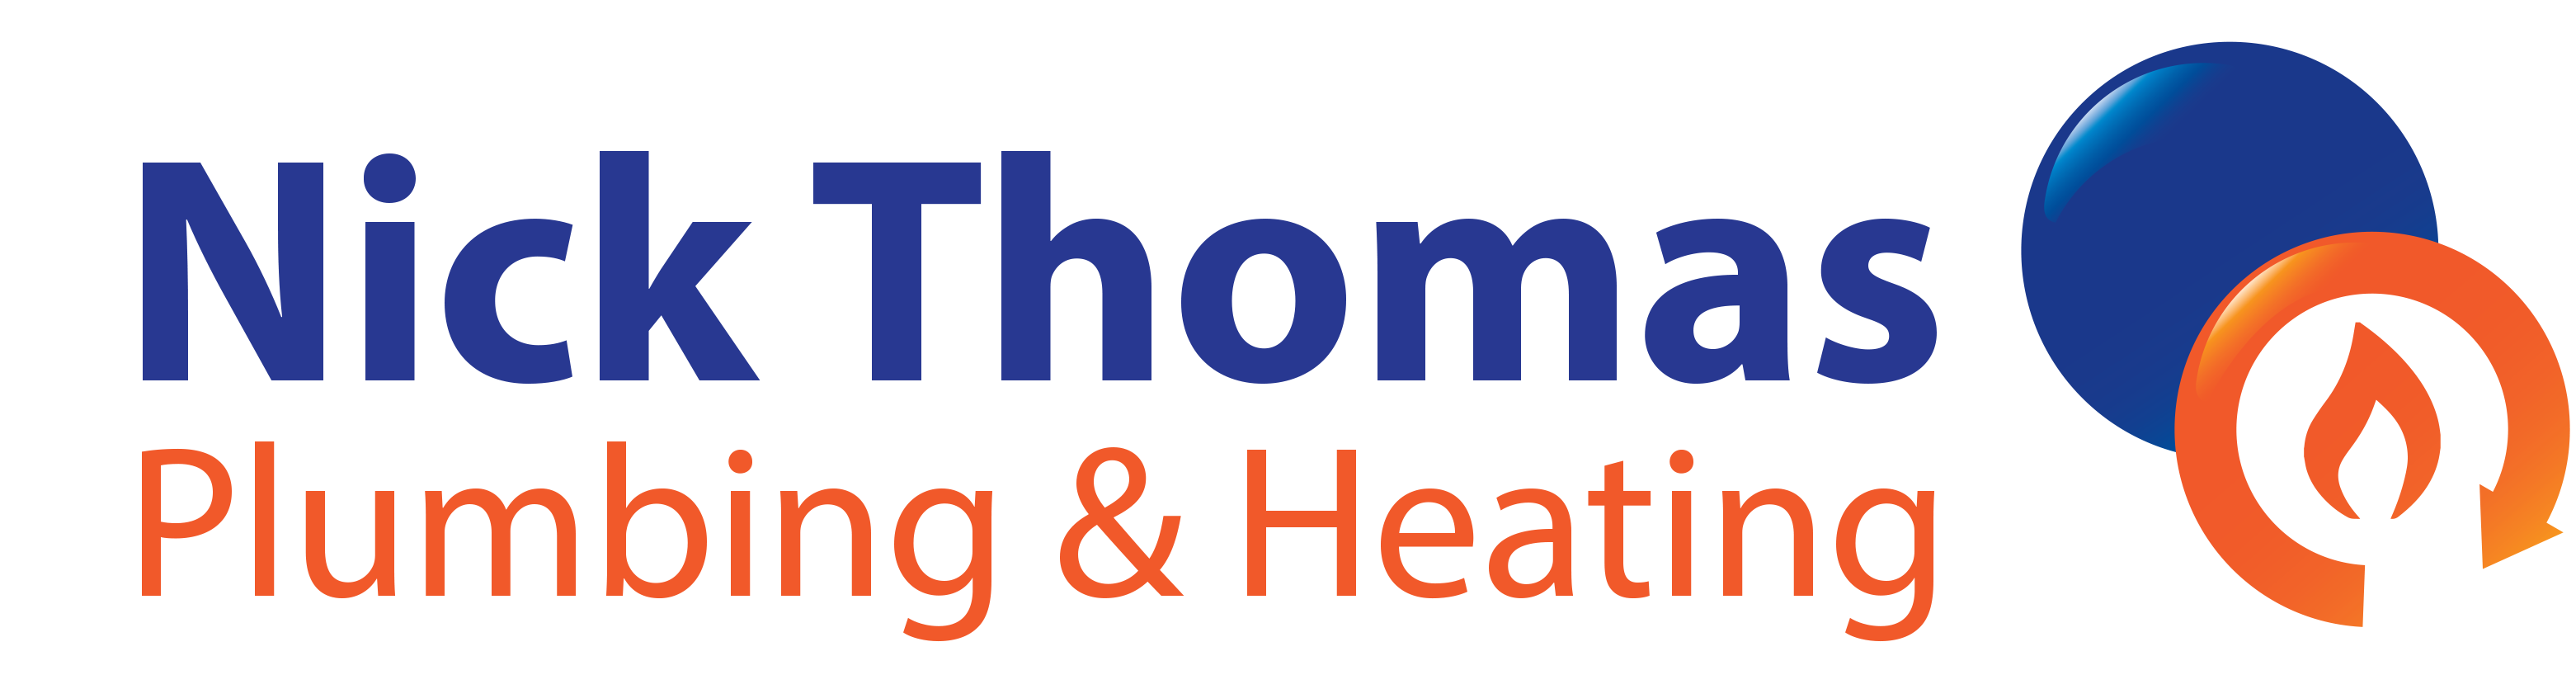 Nick Thomas Plumbing & Heating logo